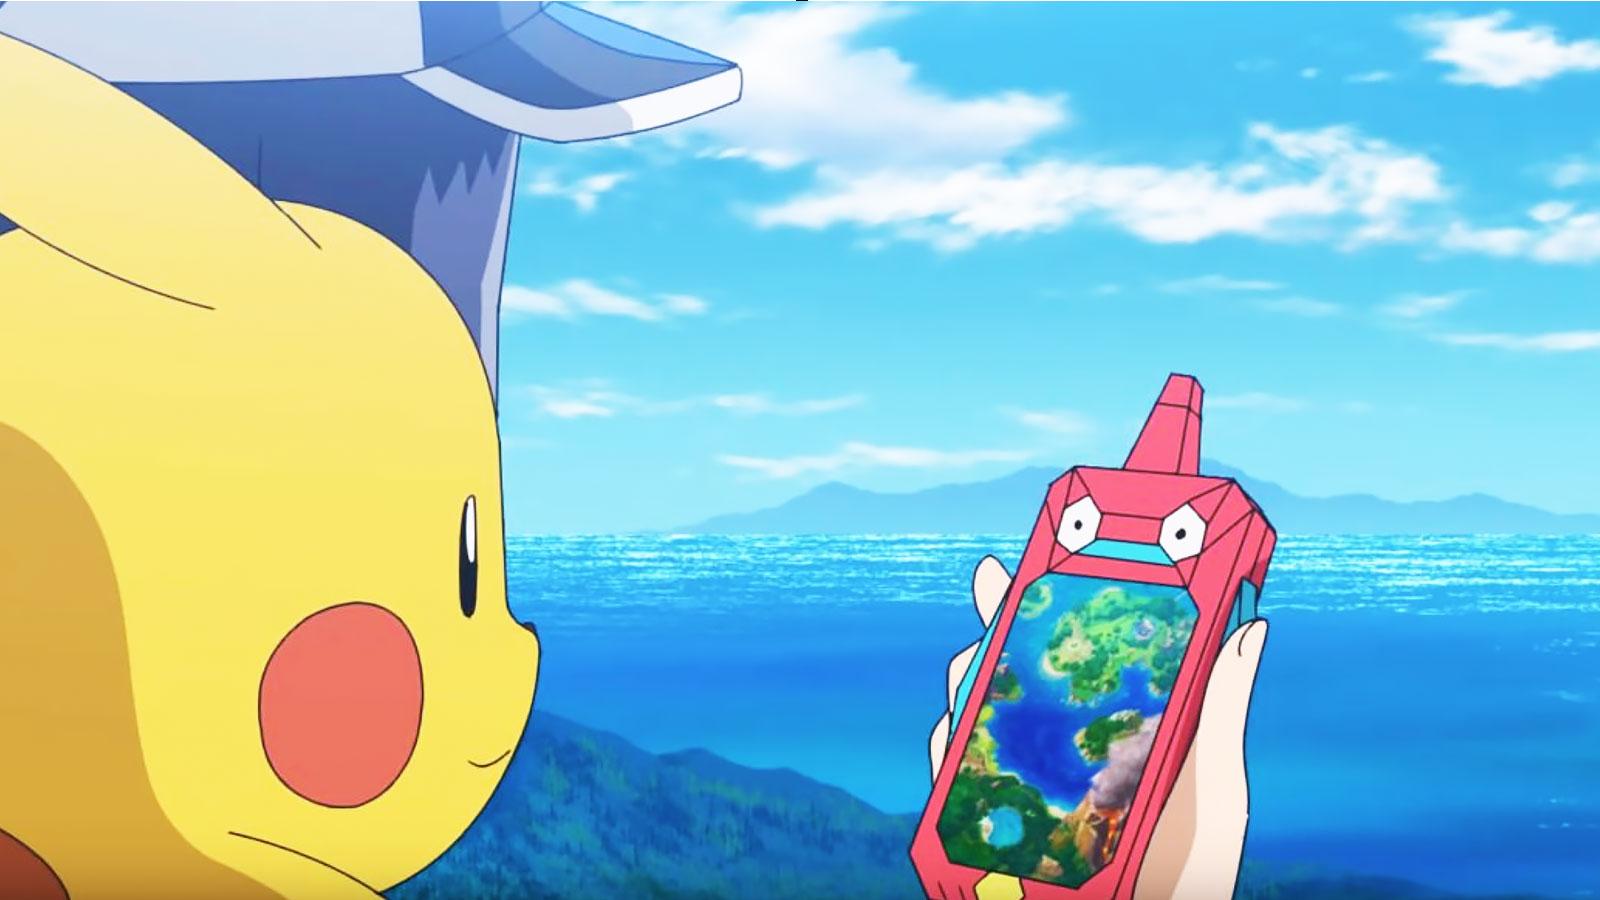 rotom phone in pokemon anime